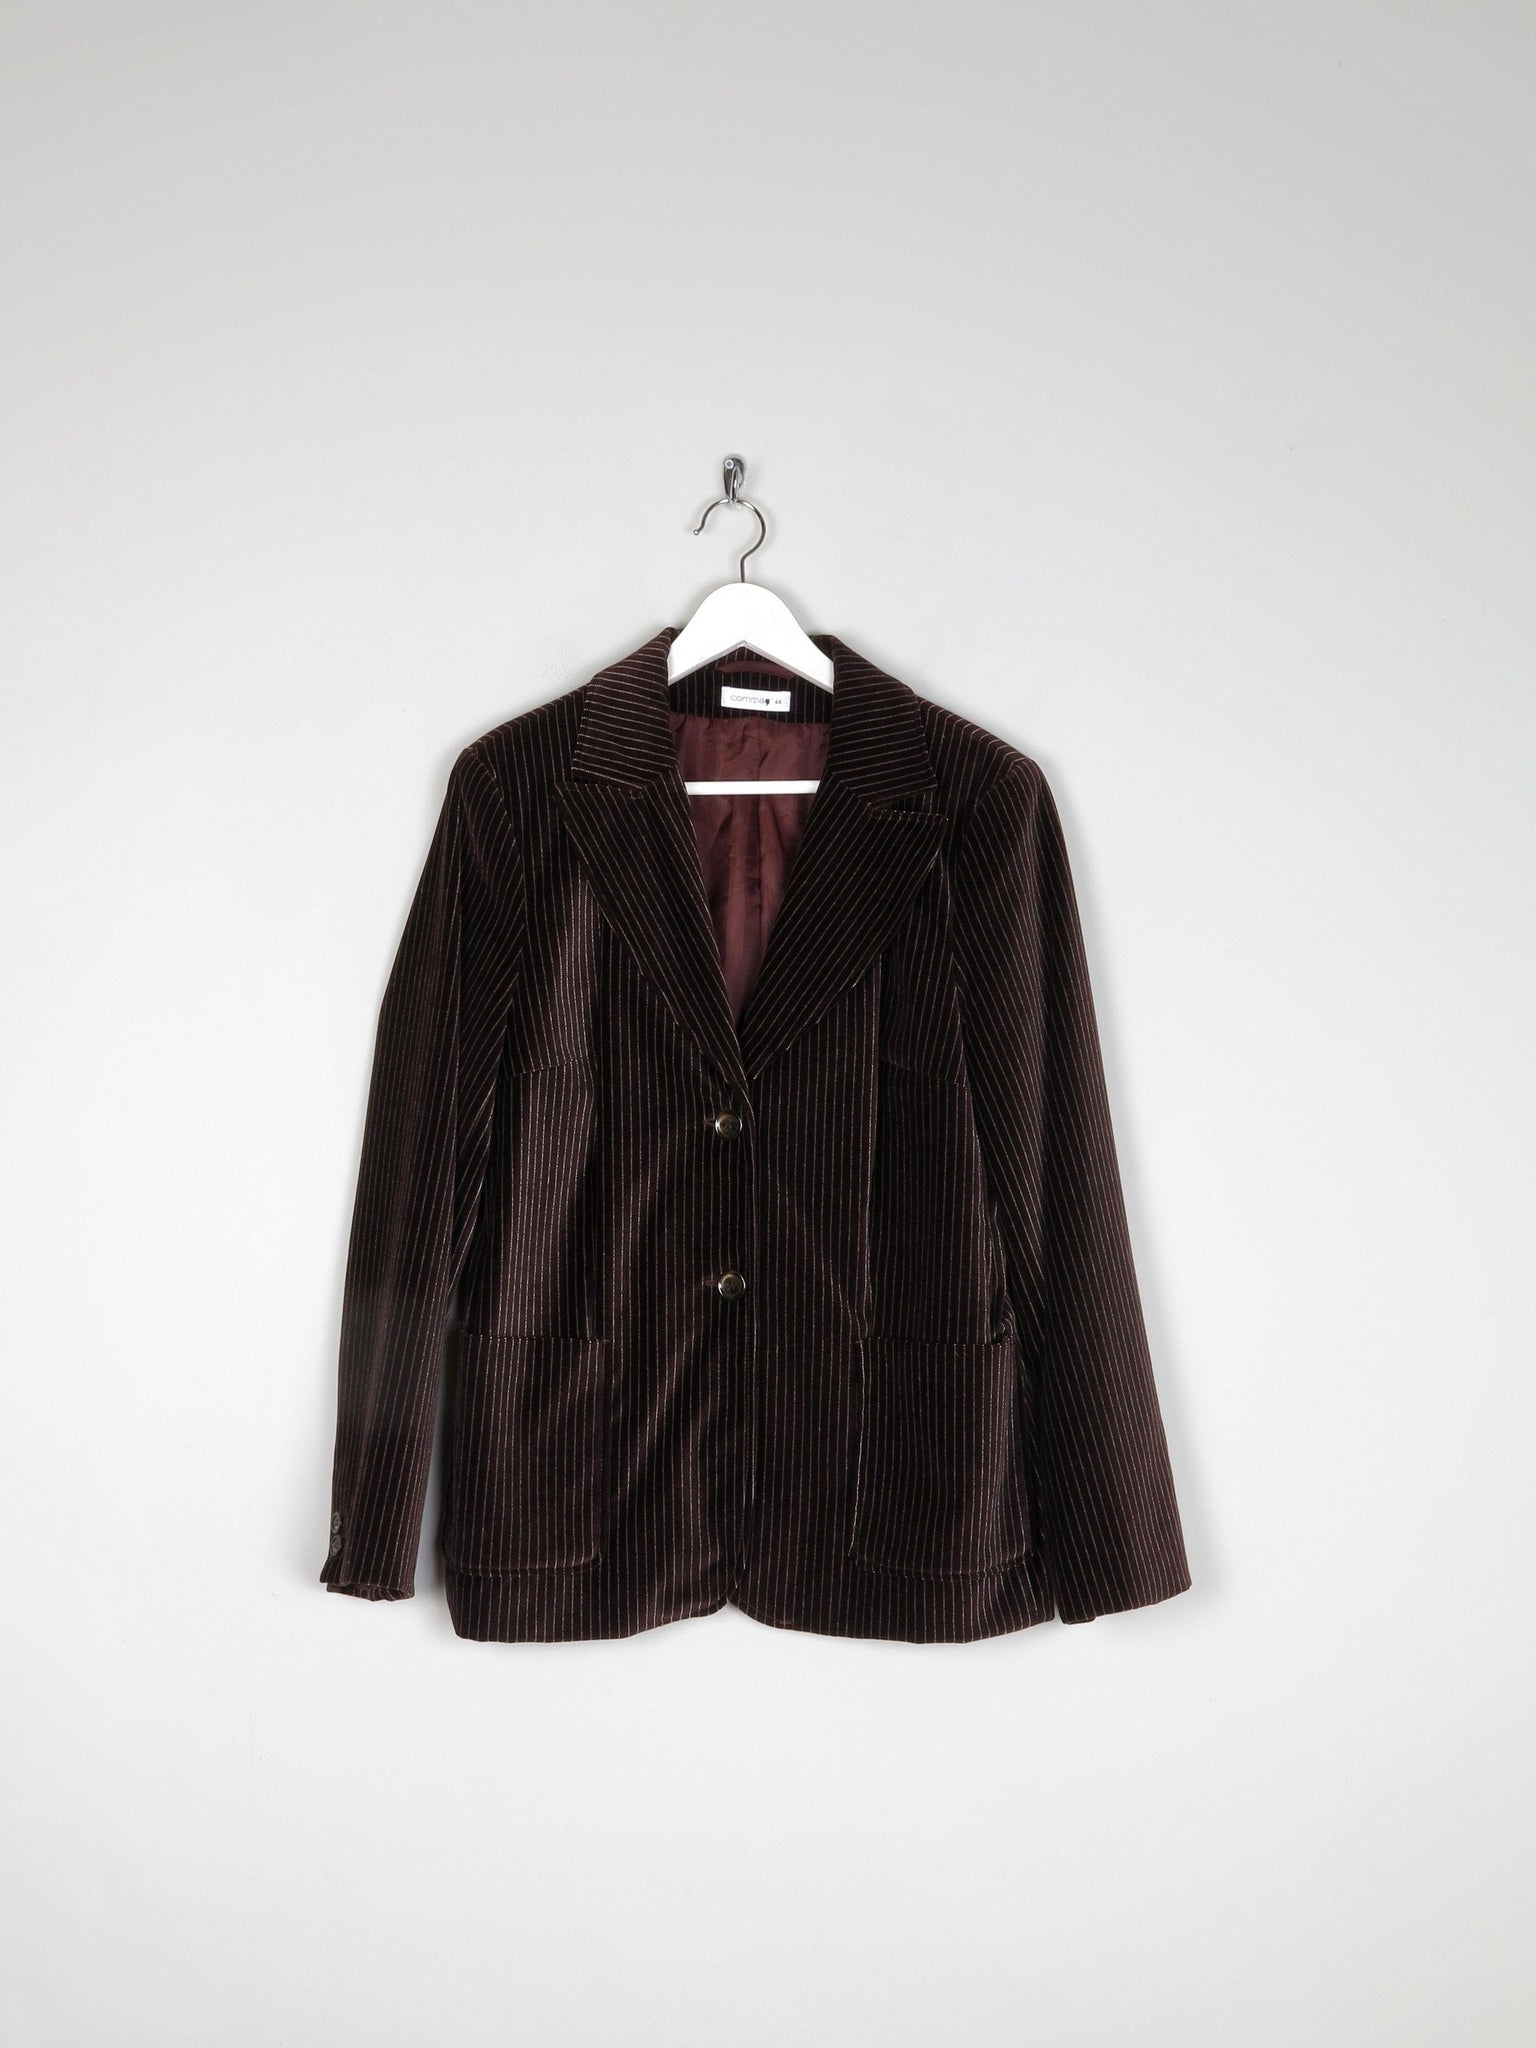 Women’s Brown Velvet Pinstripe Jacket L - The Harlequin